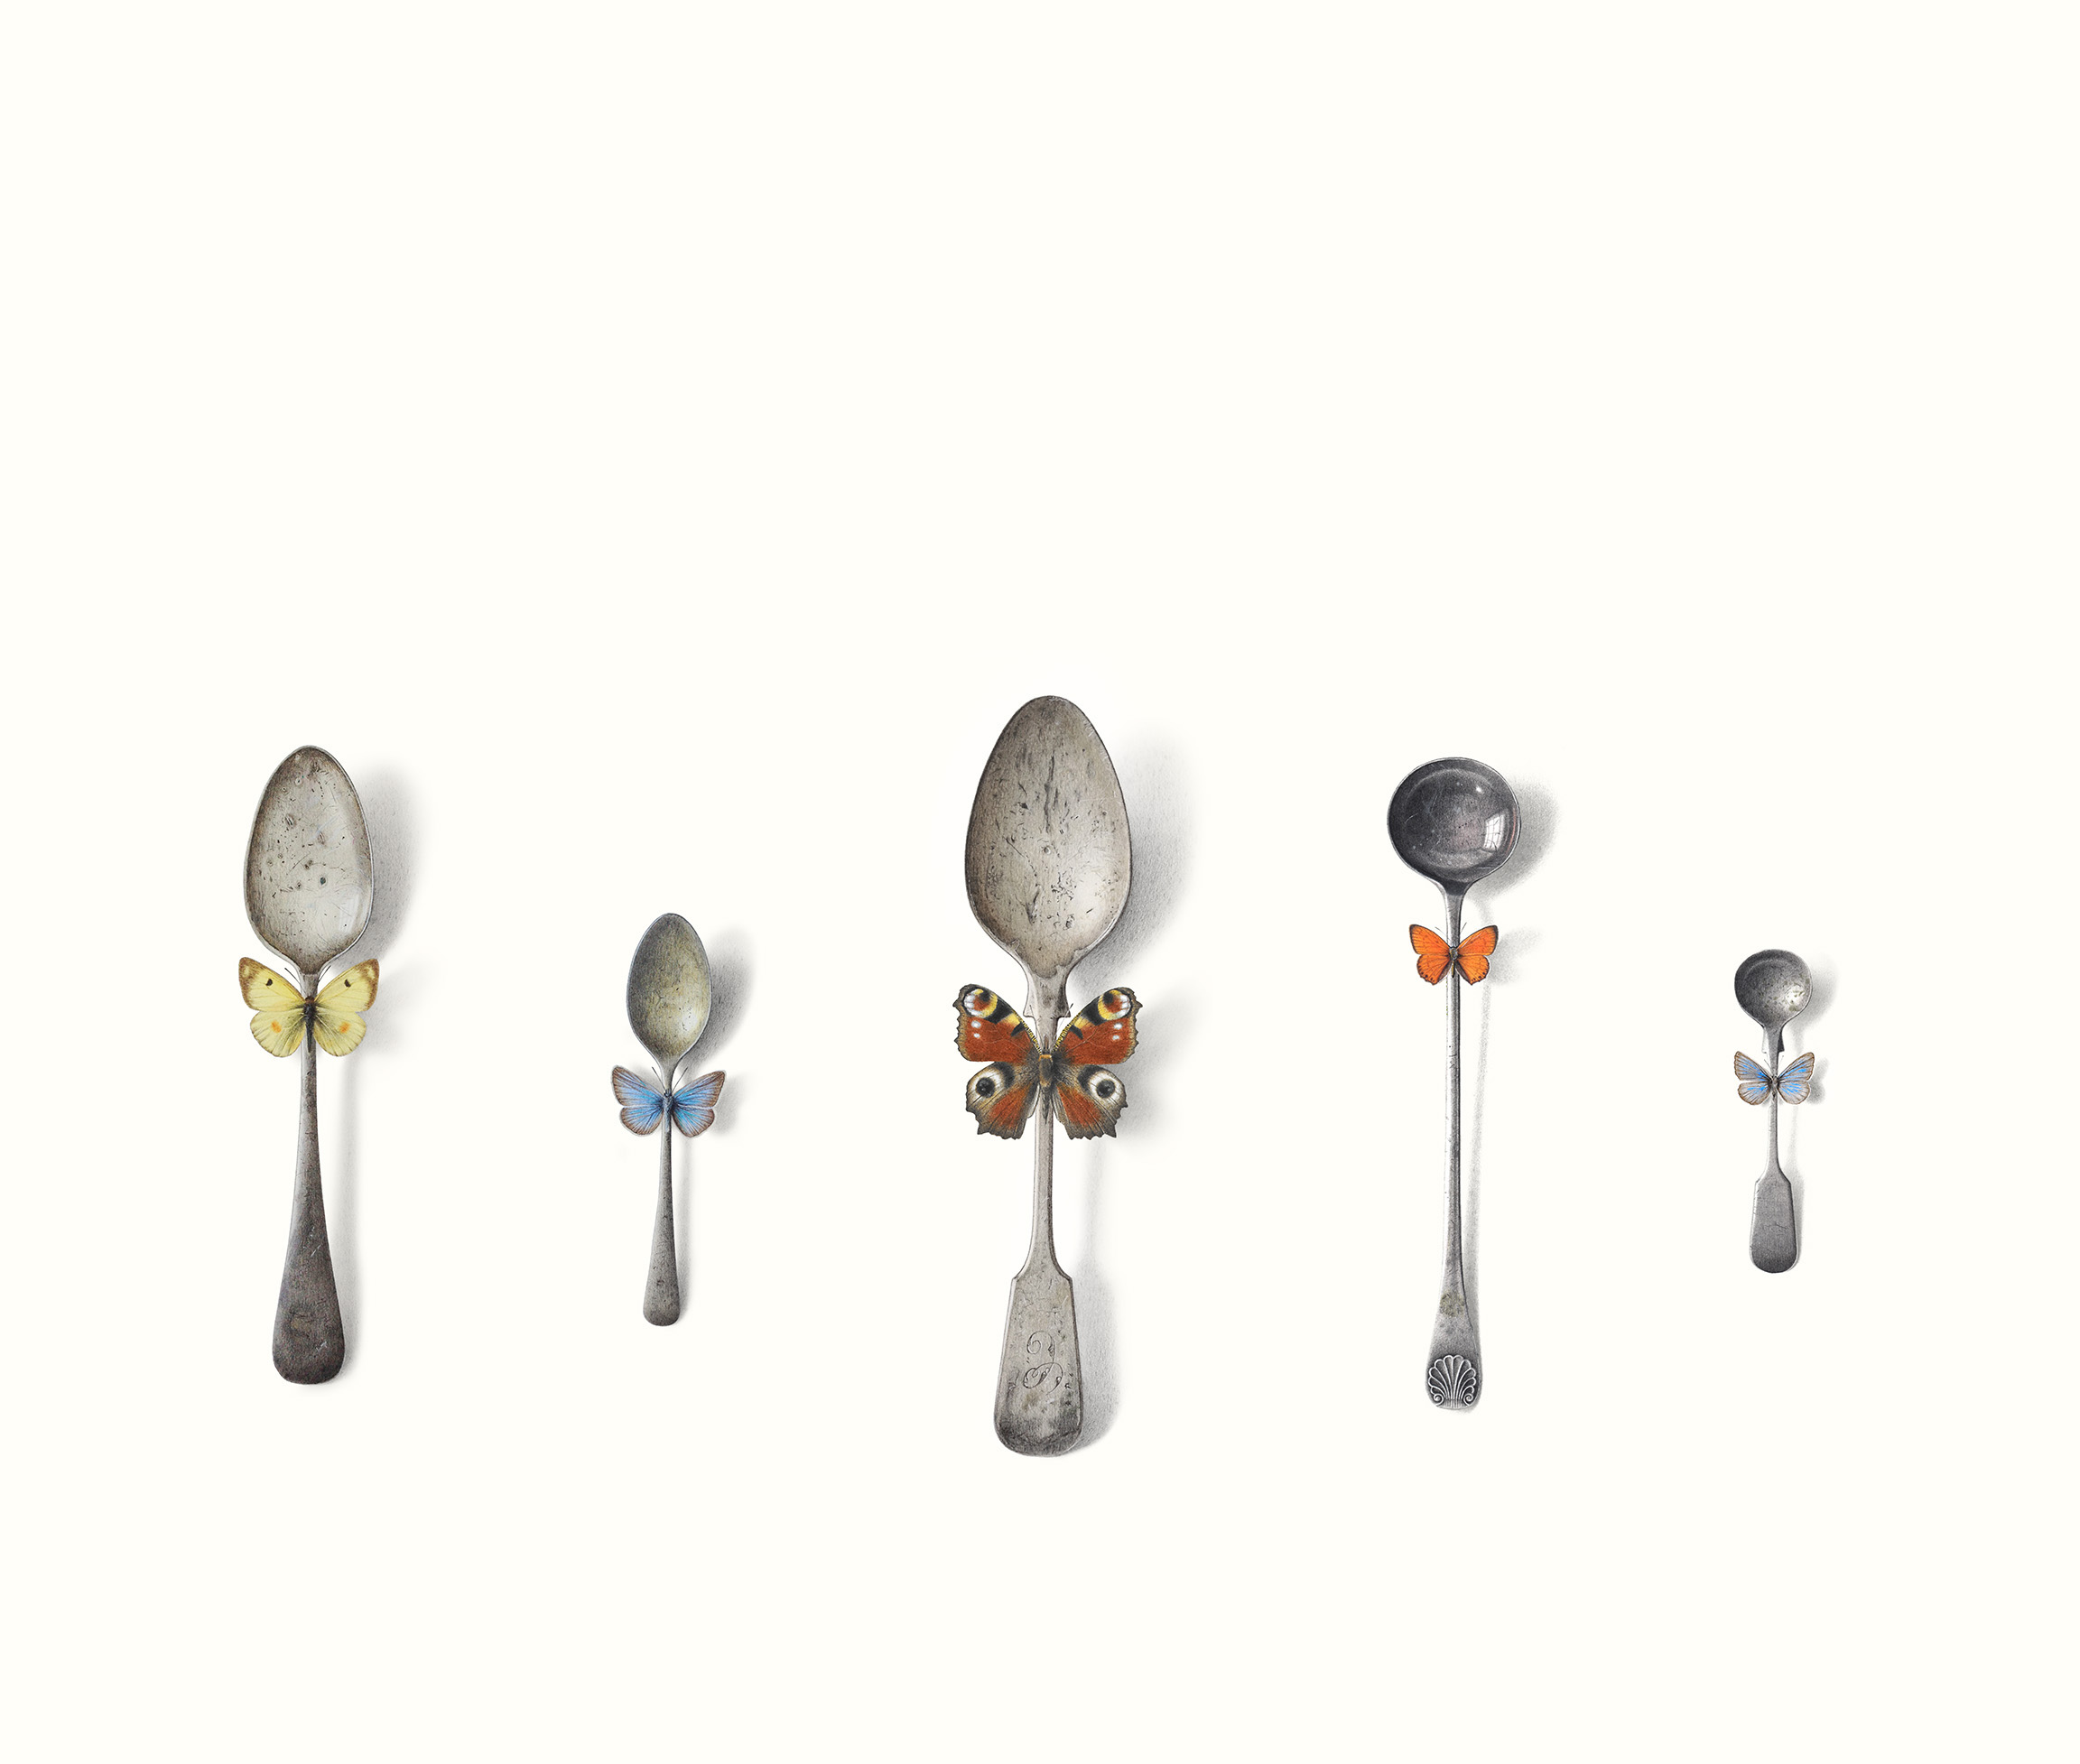 Dandy Spoons